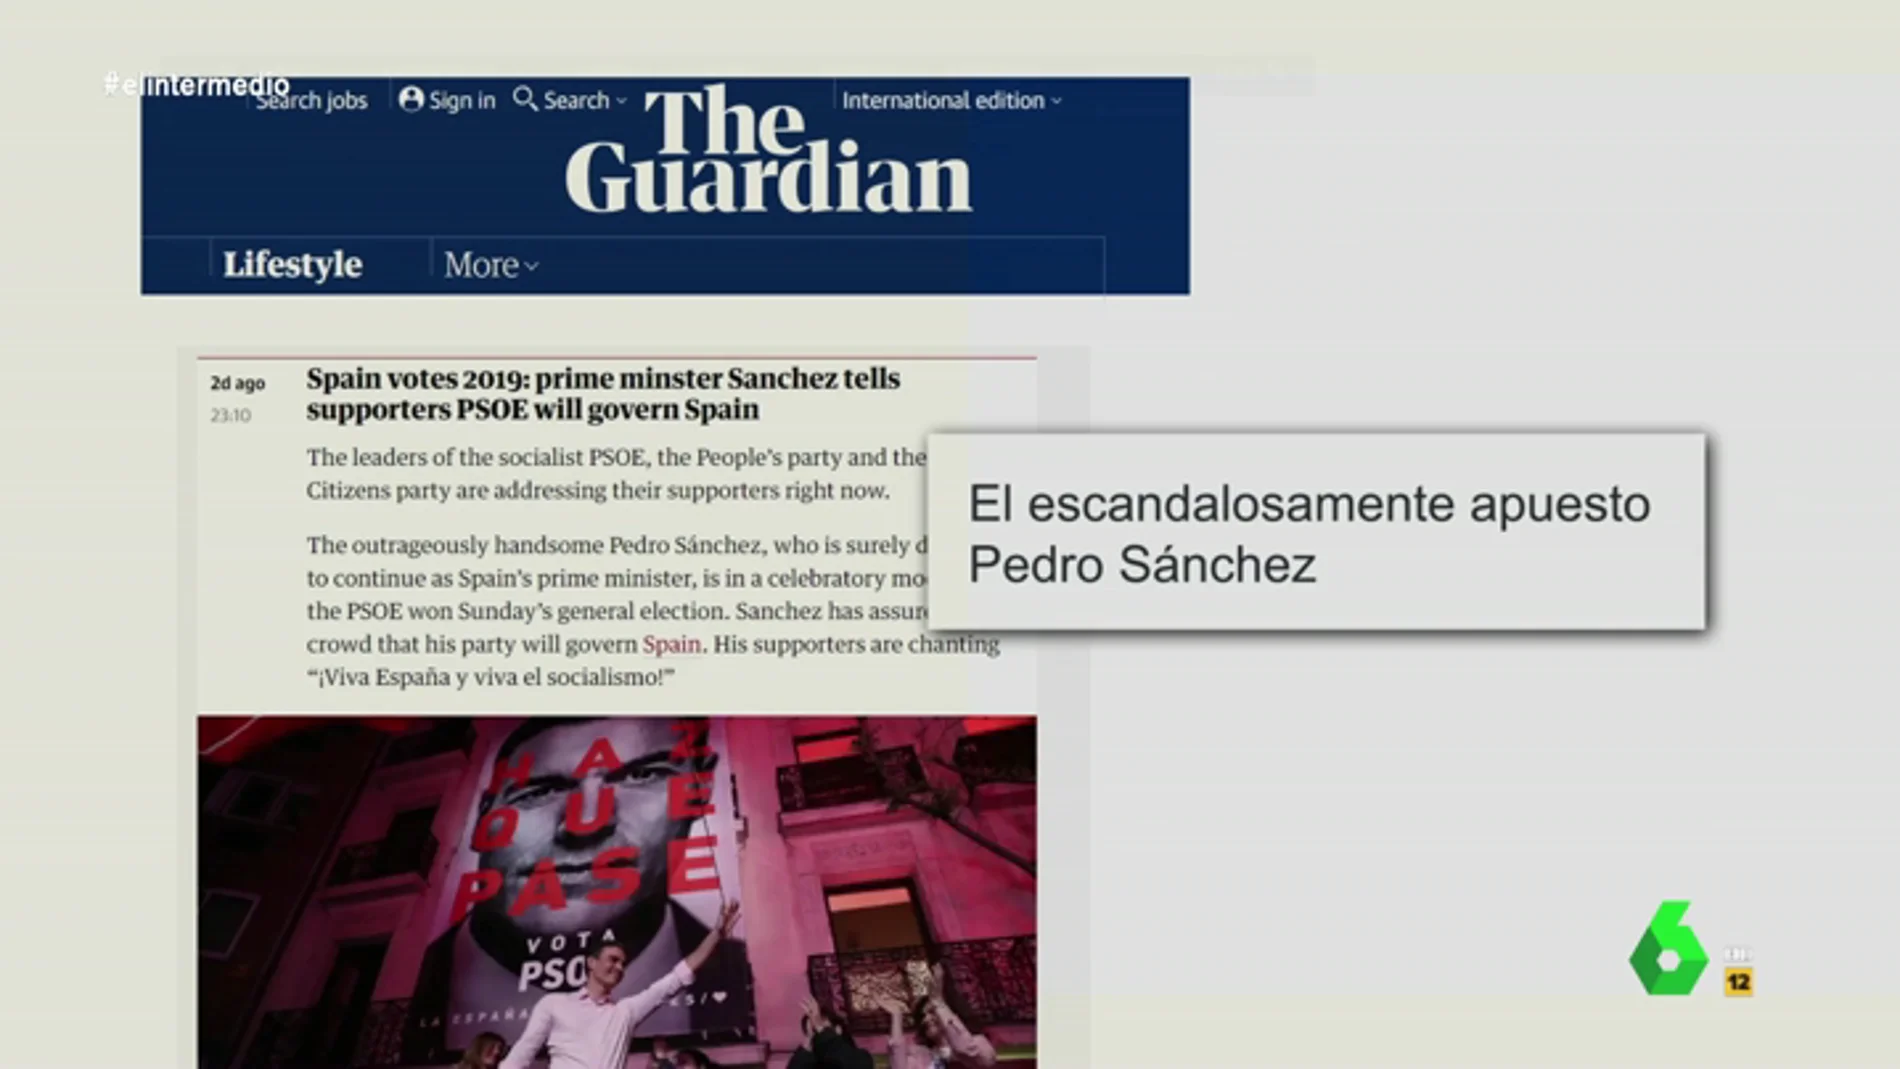 El "escandalosamente apuesto" Pedro Sánchez y otros llamativos titulares de los medios extranjeros sobre el PSOE